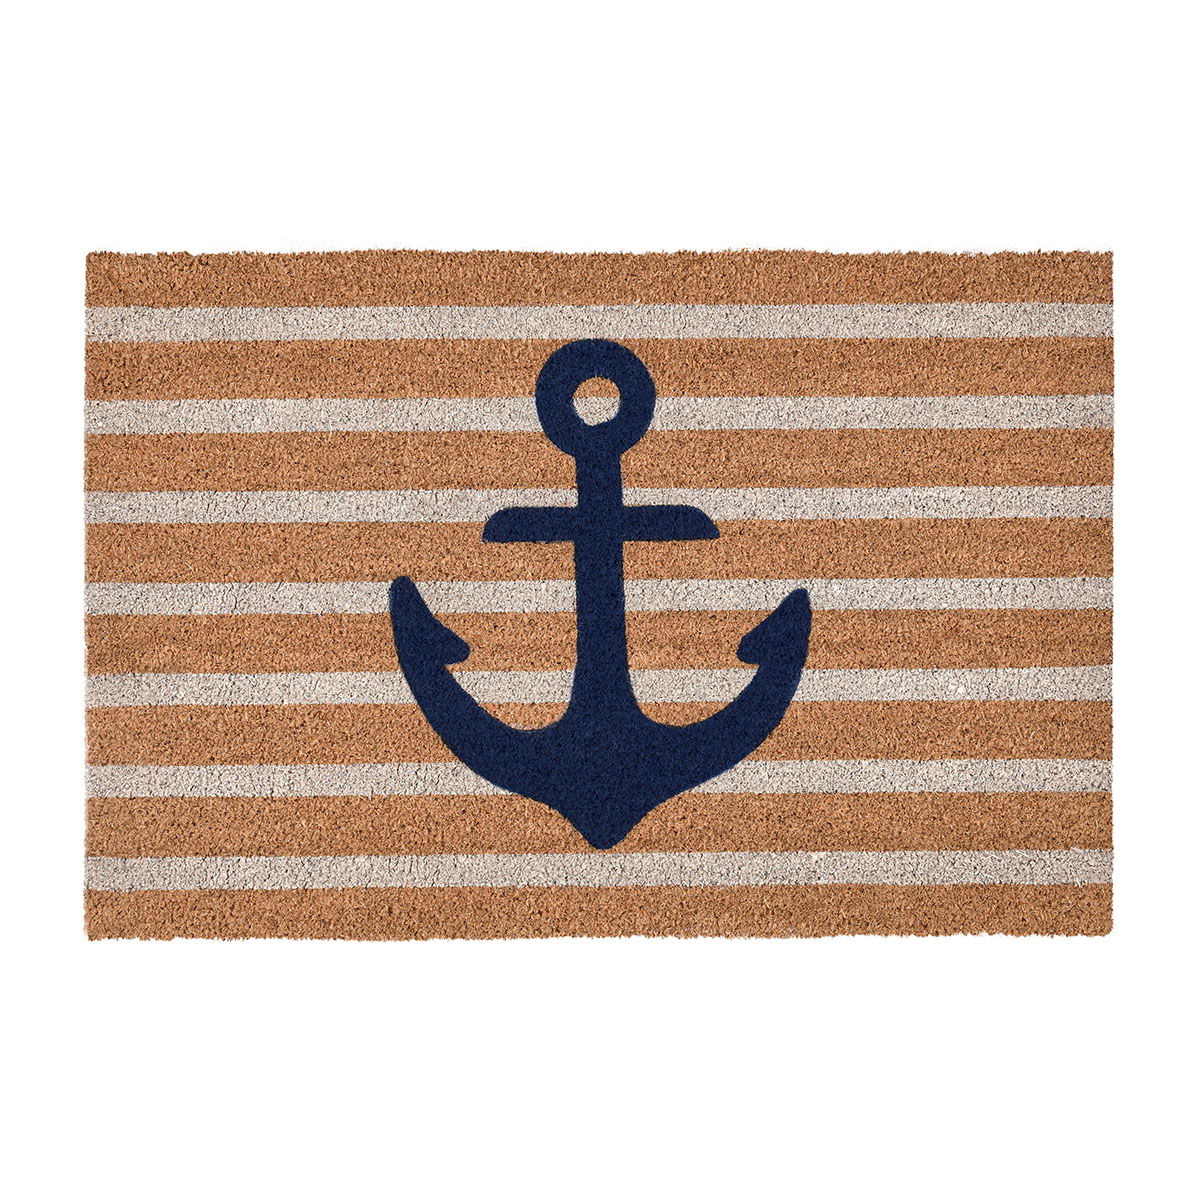 Doormats - Anchors Away Doormat - Navy/Natural